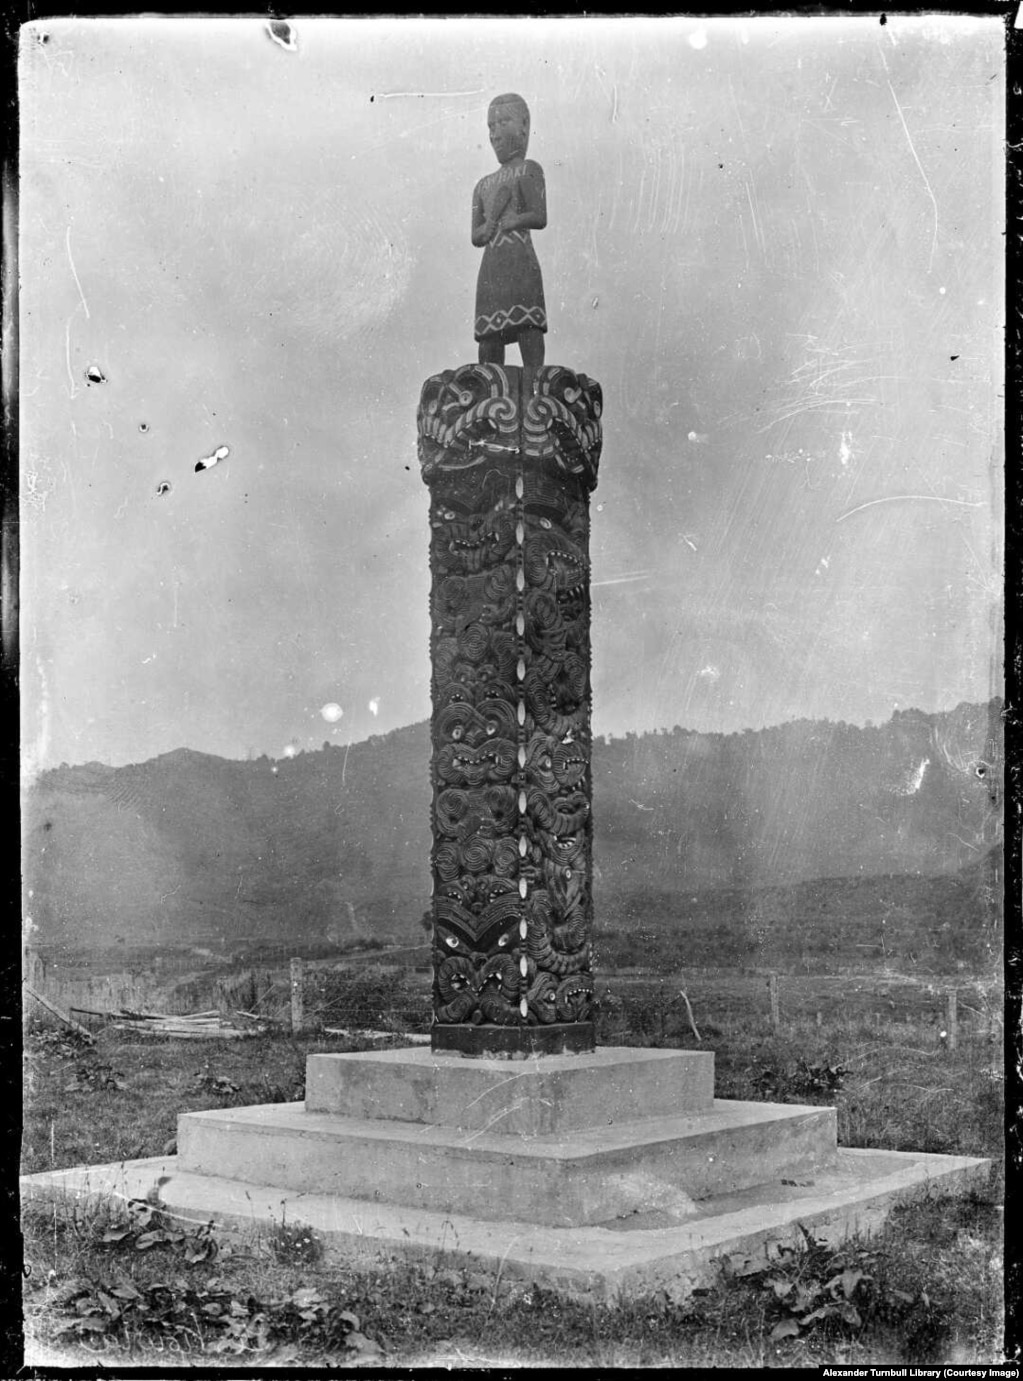 Un memorial maori pentru victimele virusului din Noua Zeelandă Din Noua Zeelandă, boala s-a răspândit în Samoa,o insulă din Pacific, unde a ucis 22% din întreaga populație, de 38.000, în decurs de două luni. În Iran, se estimează că până la 2,4 milioane - care ar fi fost mai mult de 20 la sută din populația țării - au murit. Aproximativ 300.000 de oameni au fost uciși de pandemie în Brazilia, inclusiv președintele ales al țării.